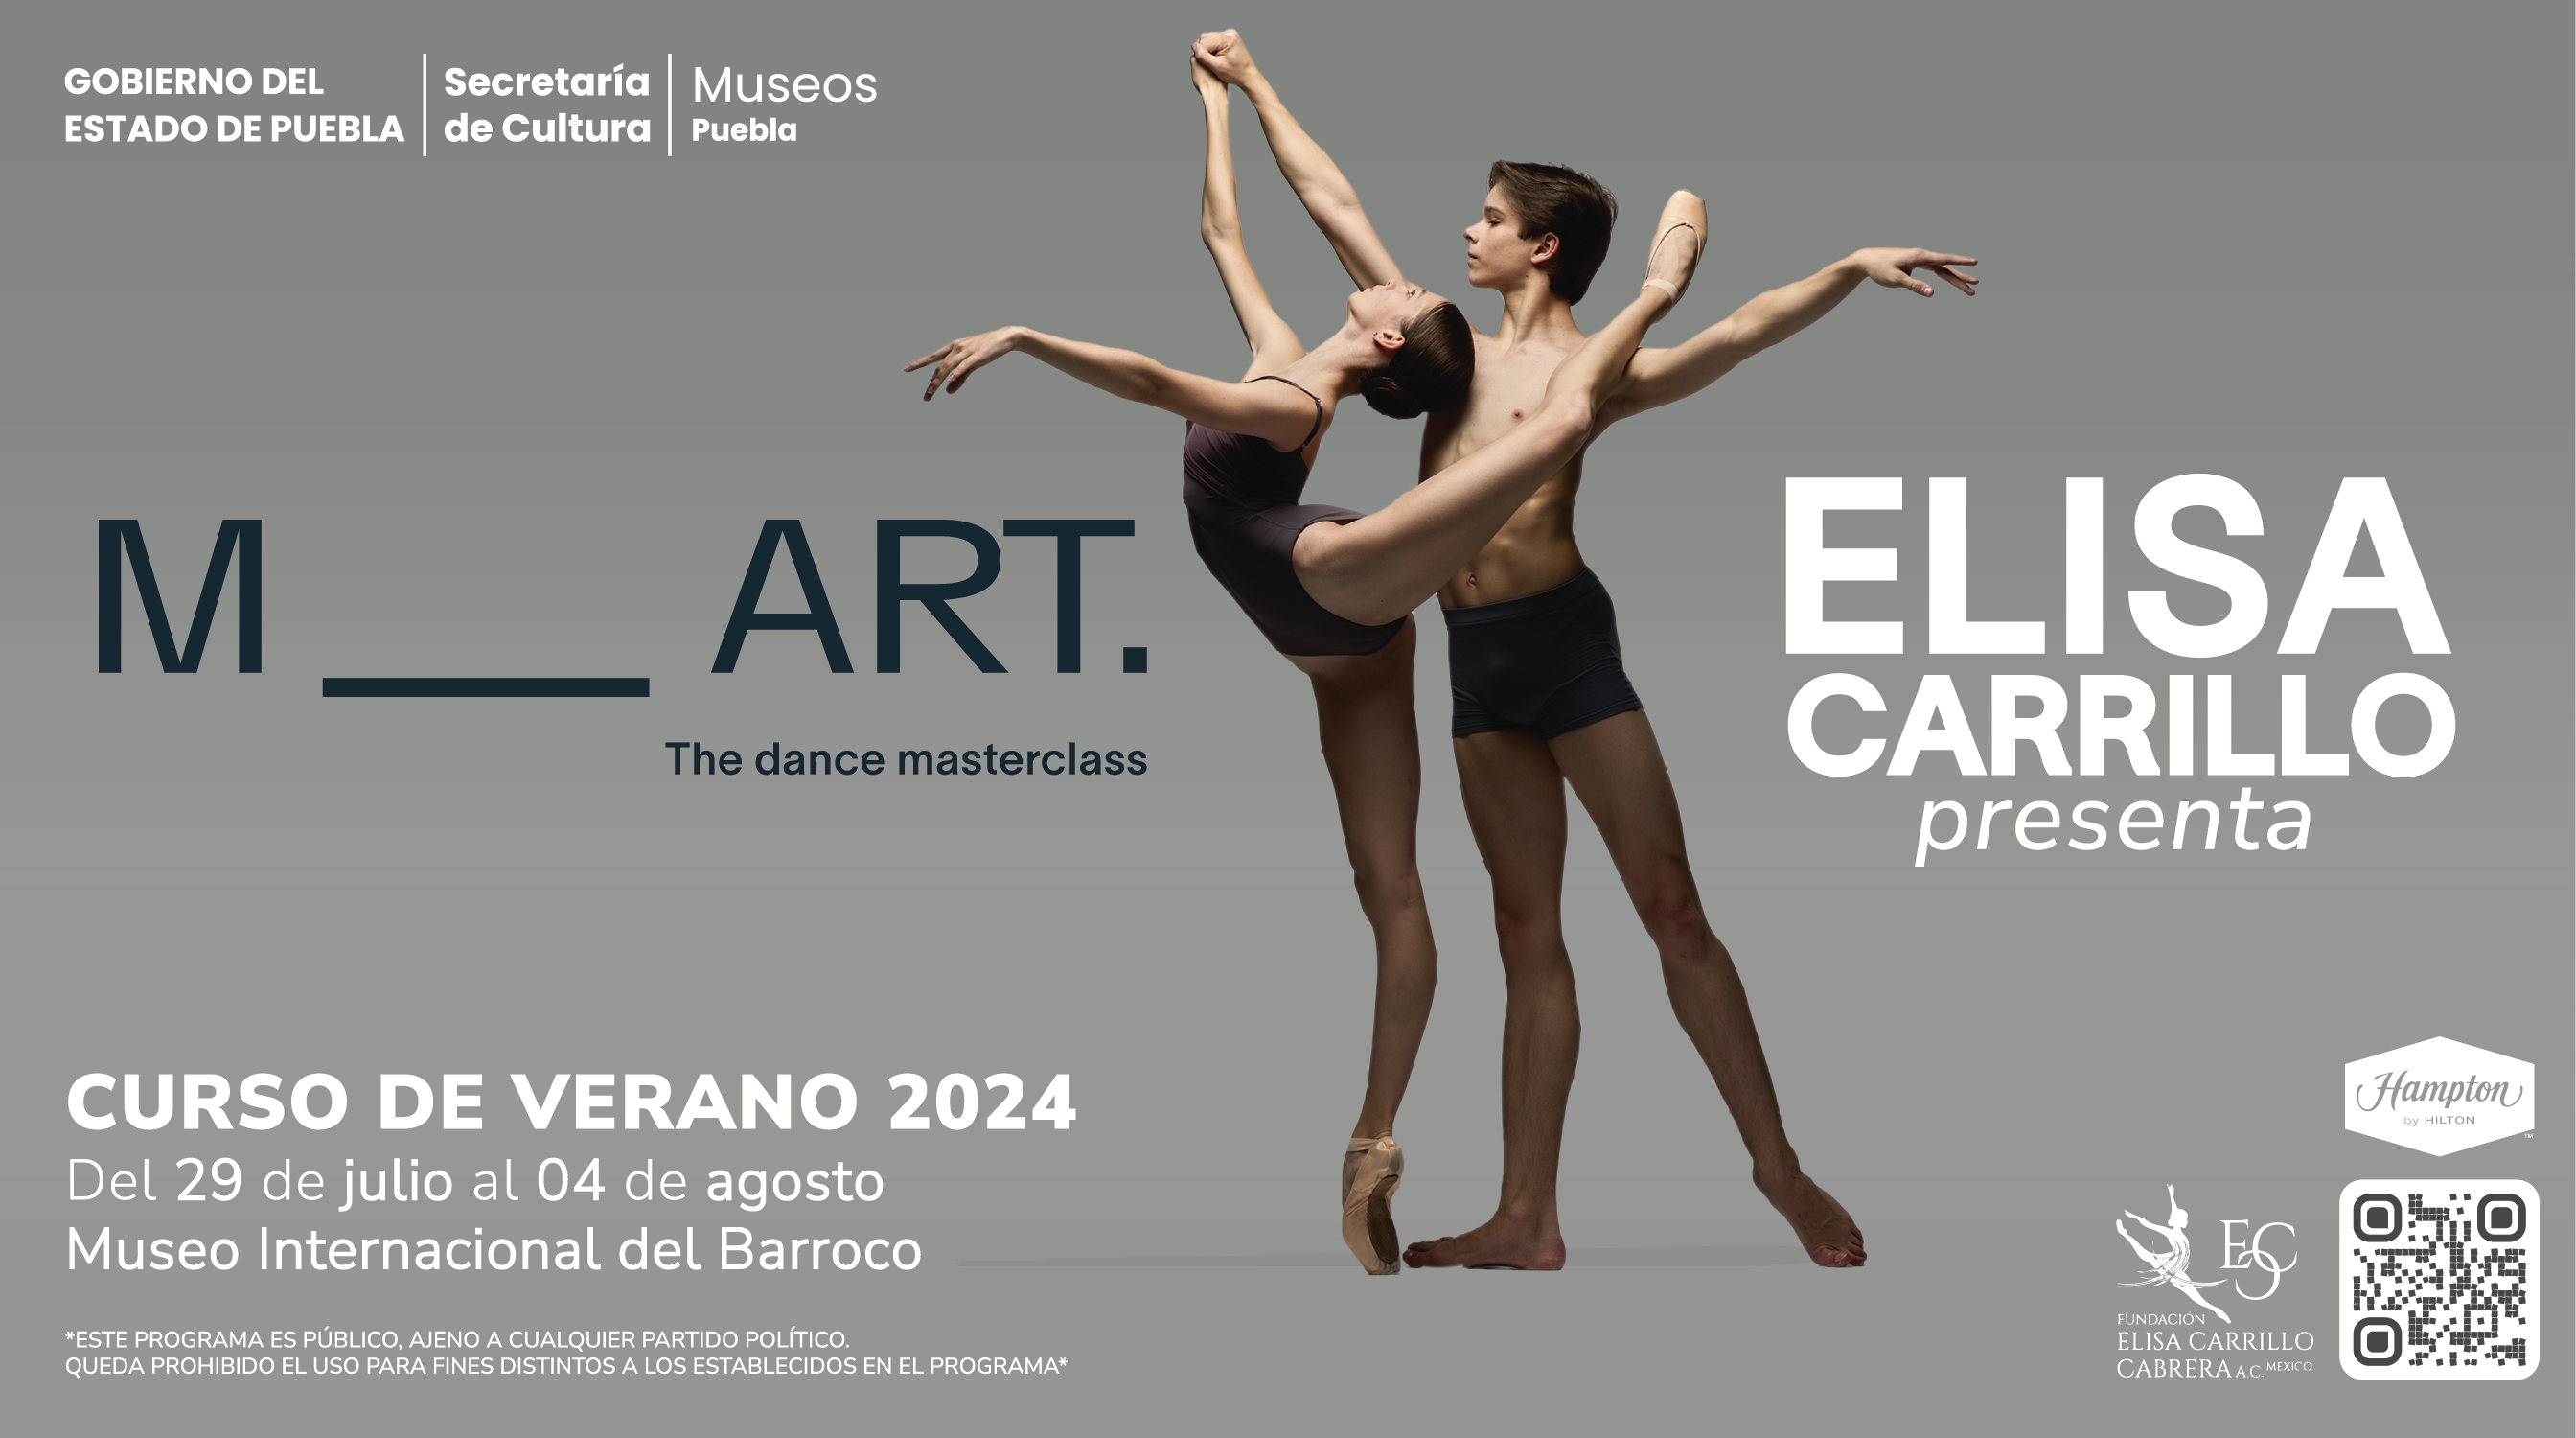 El Barroco será sede de Curso de Verano de Ballet Internacional